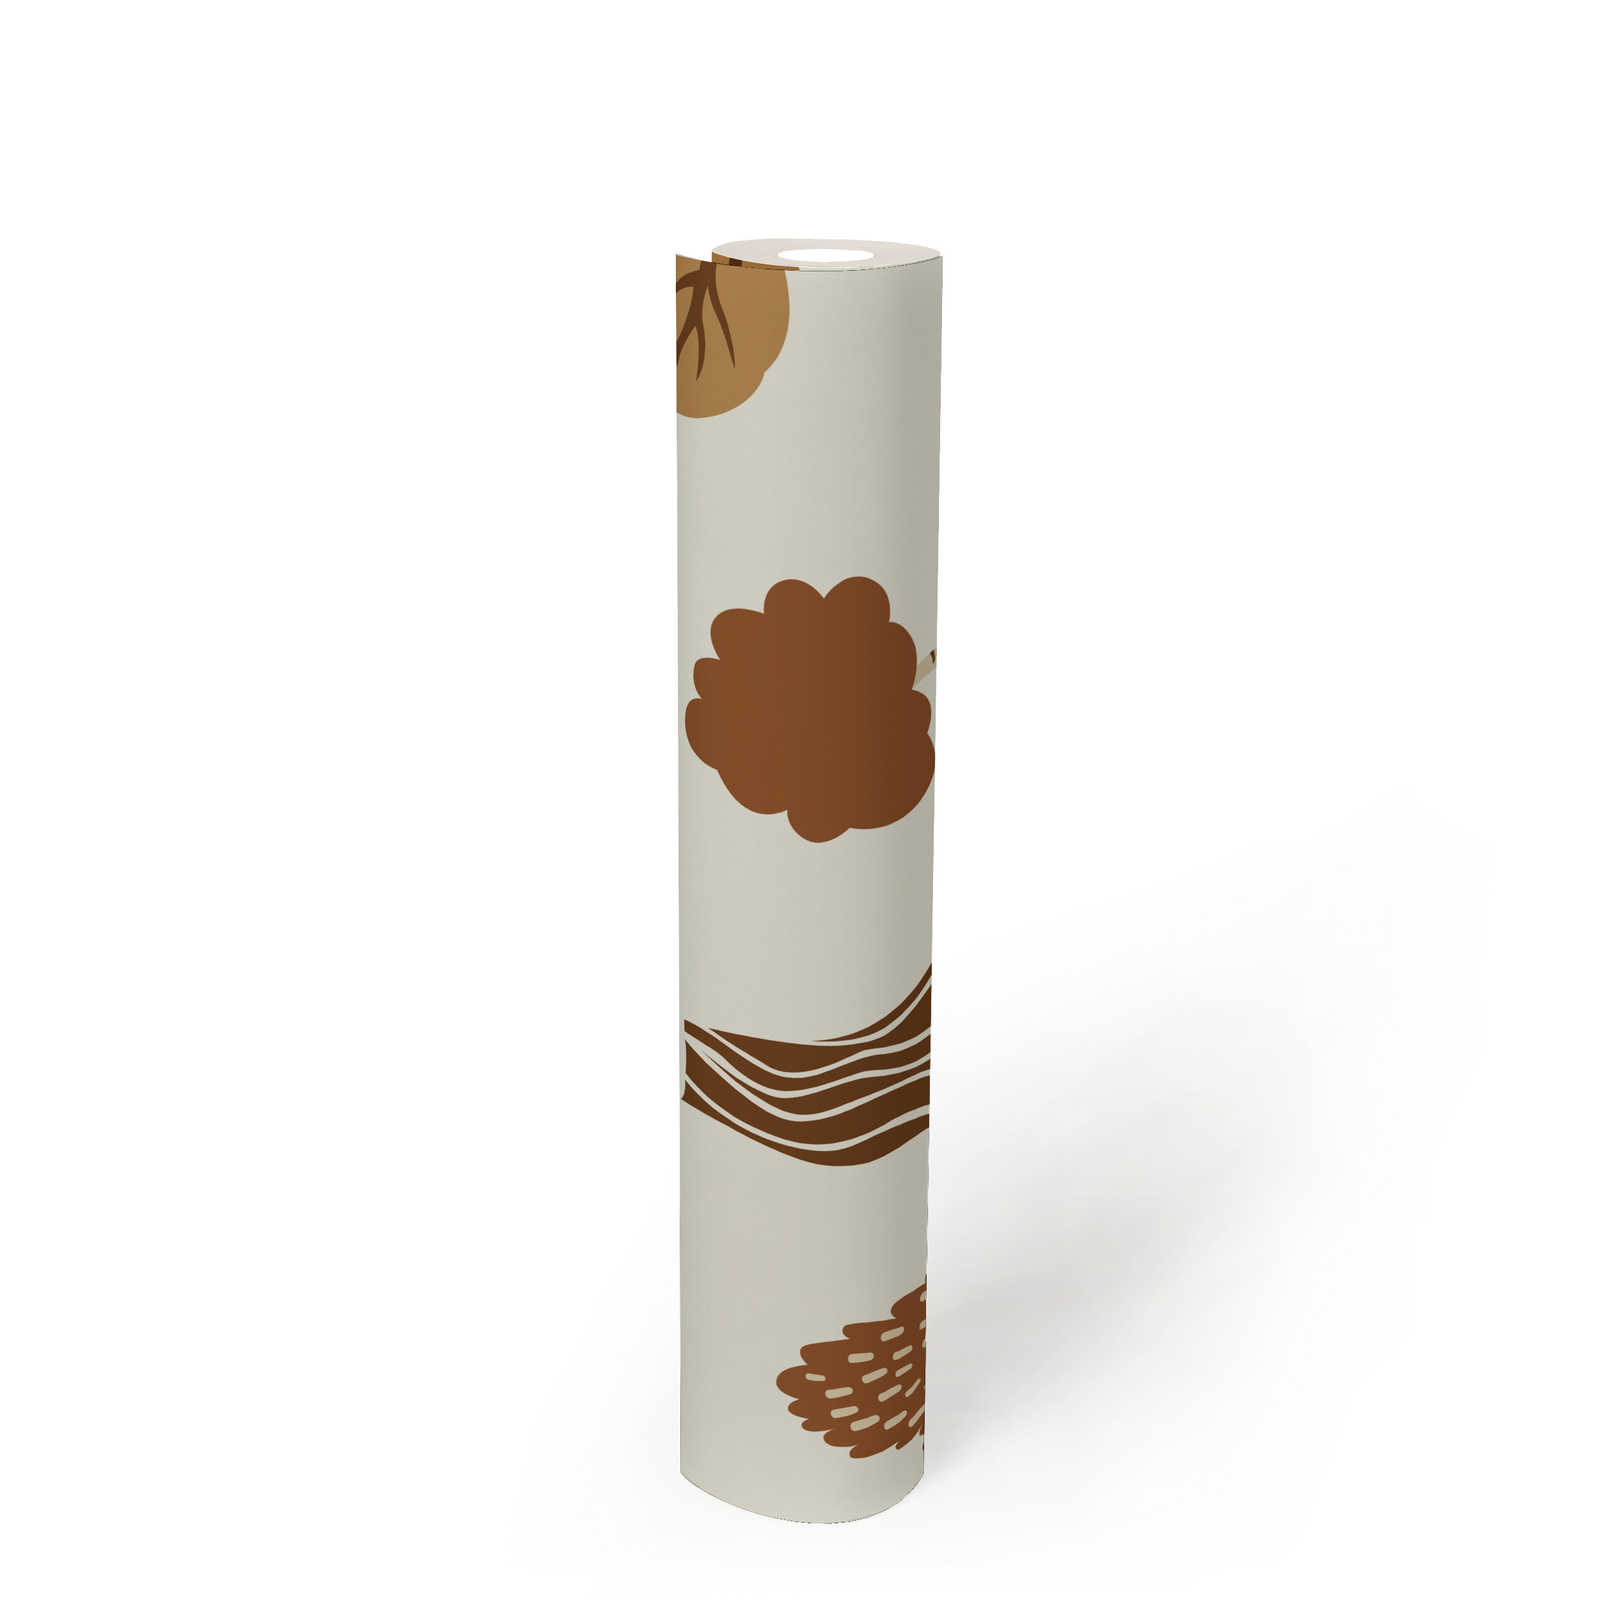             Papel pintado tejido-no tejido con motivo de bosque y árboles otoñales - crema, marrón
        